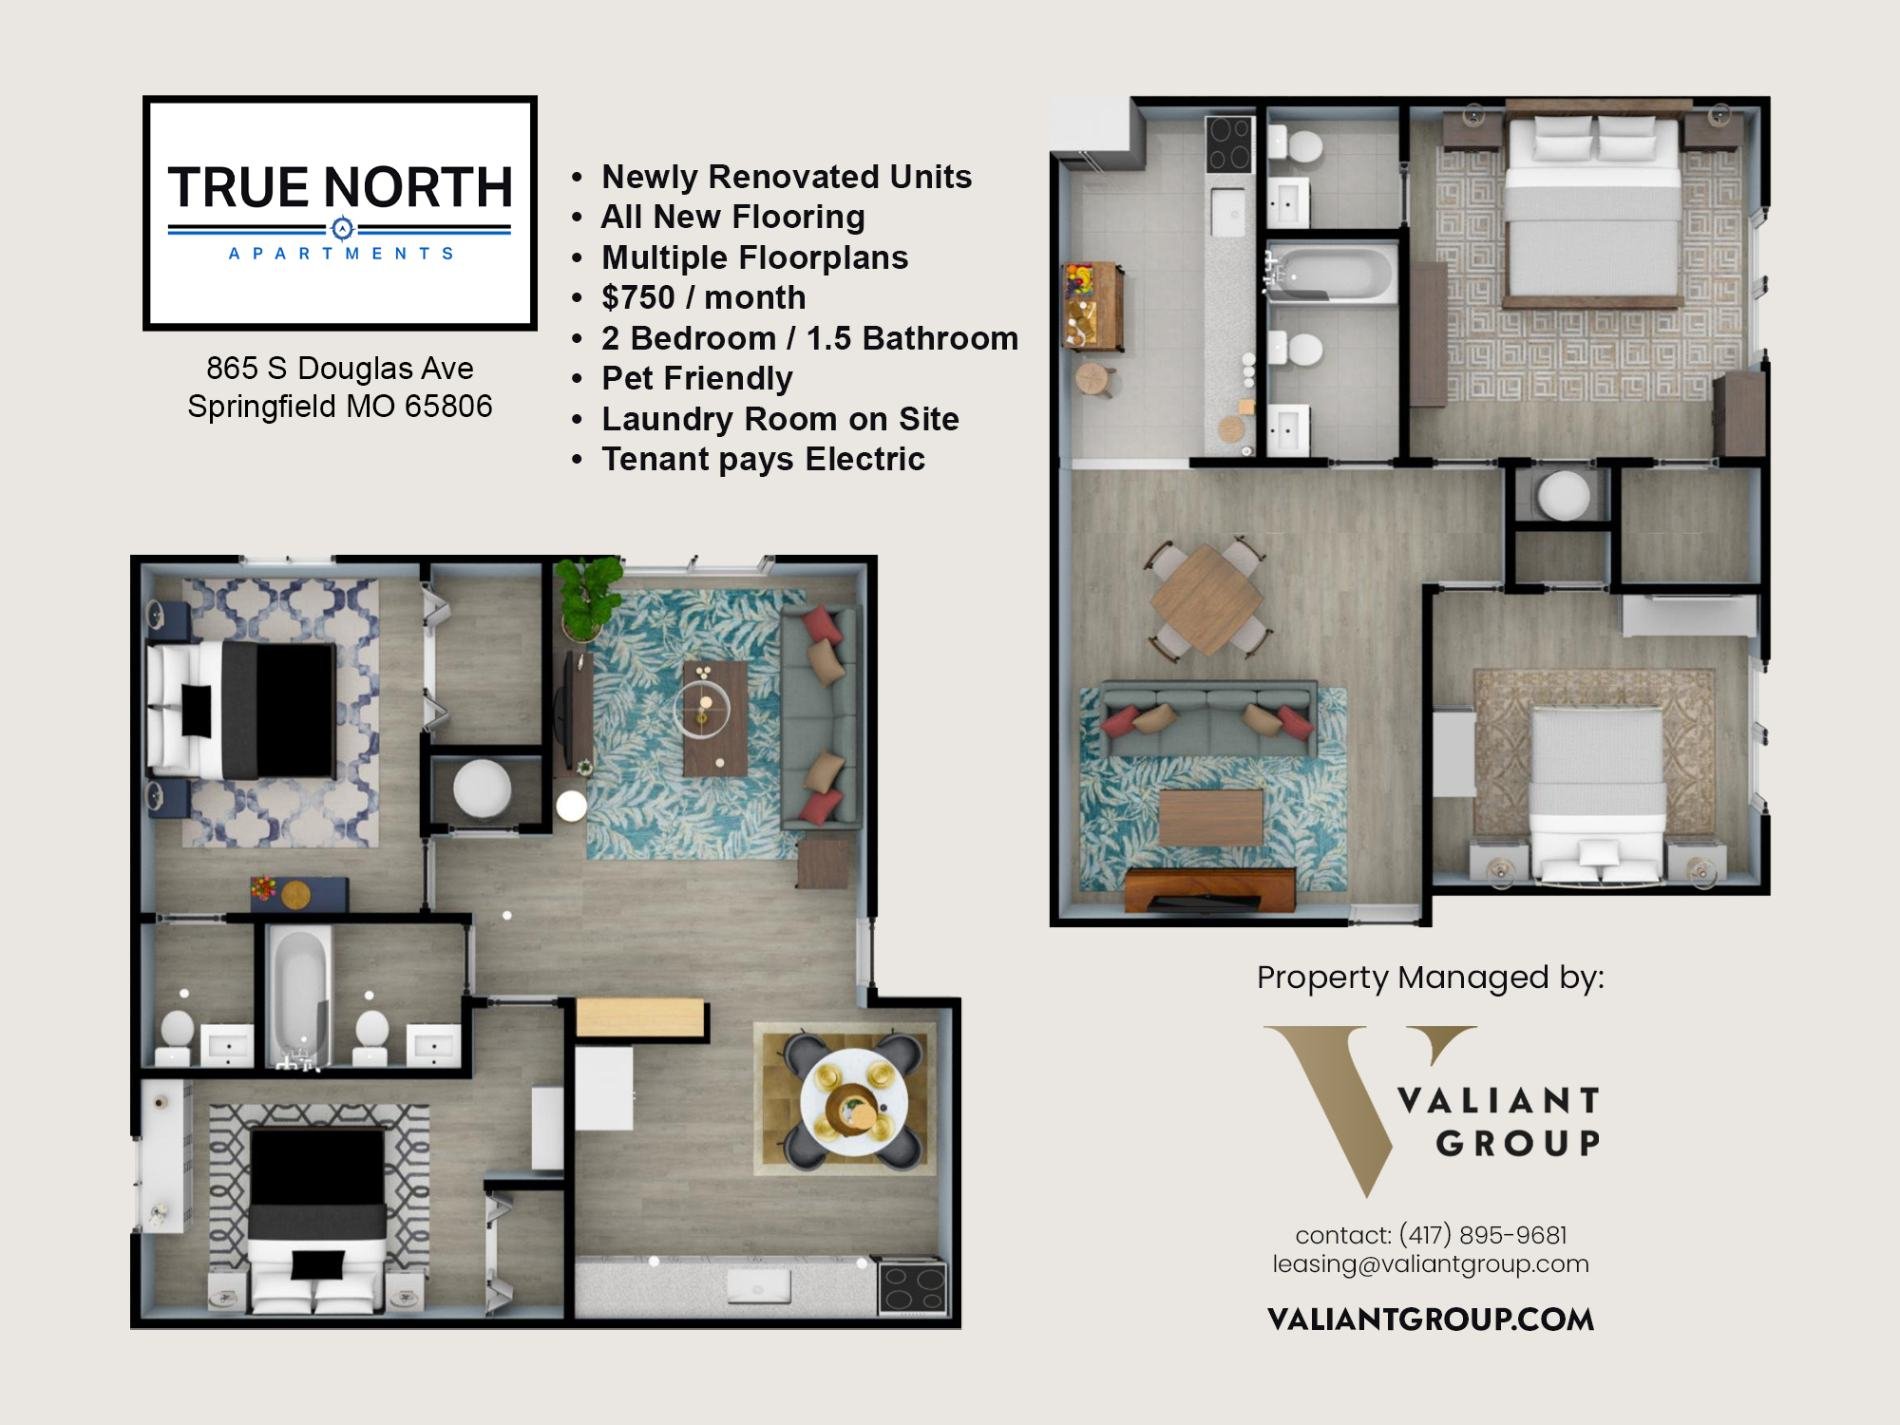 True-North-Apartments-865-S-Douglas-Renderings-Floorplan-Graphic-Listings-compressed.jpg